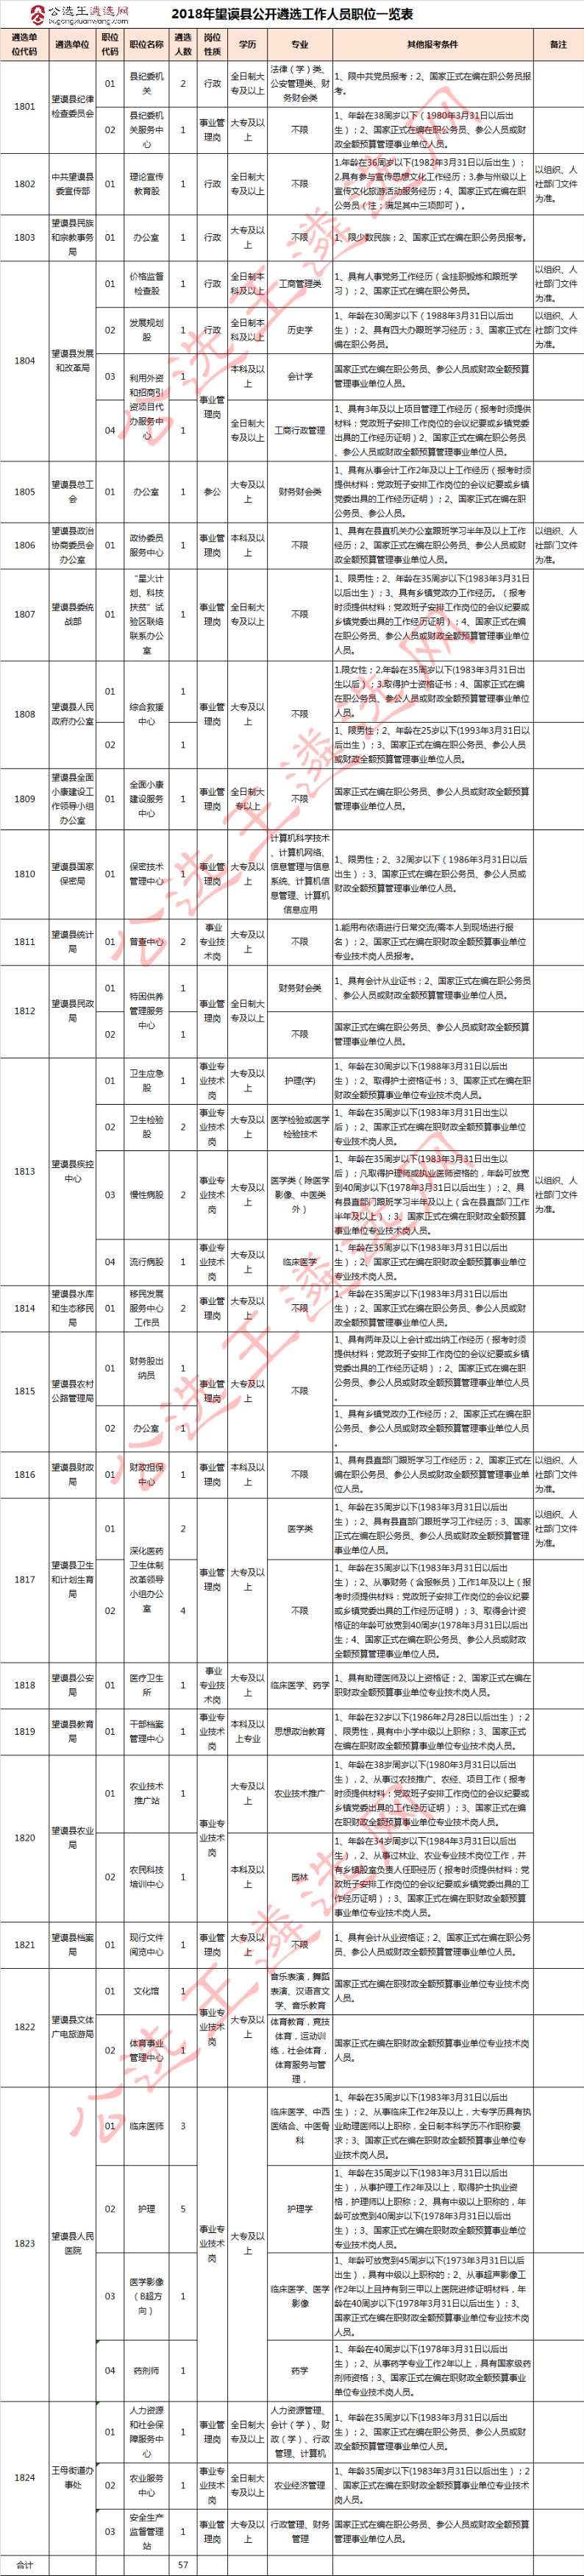 2018年望谟县公开遴选工作人员职位表.jpg